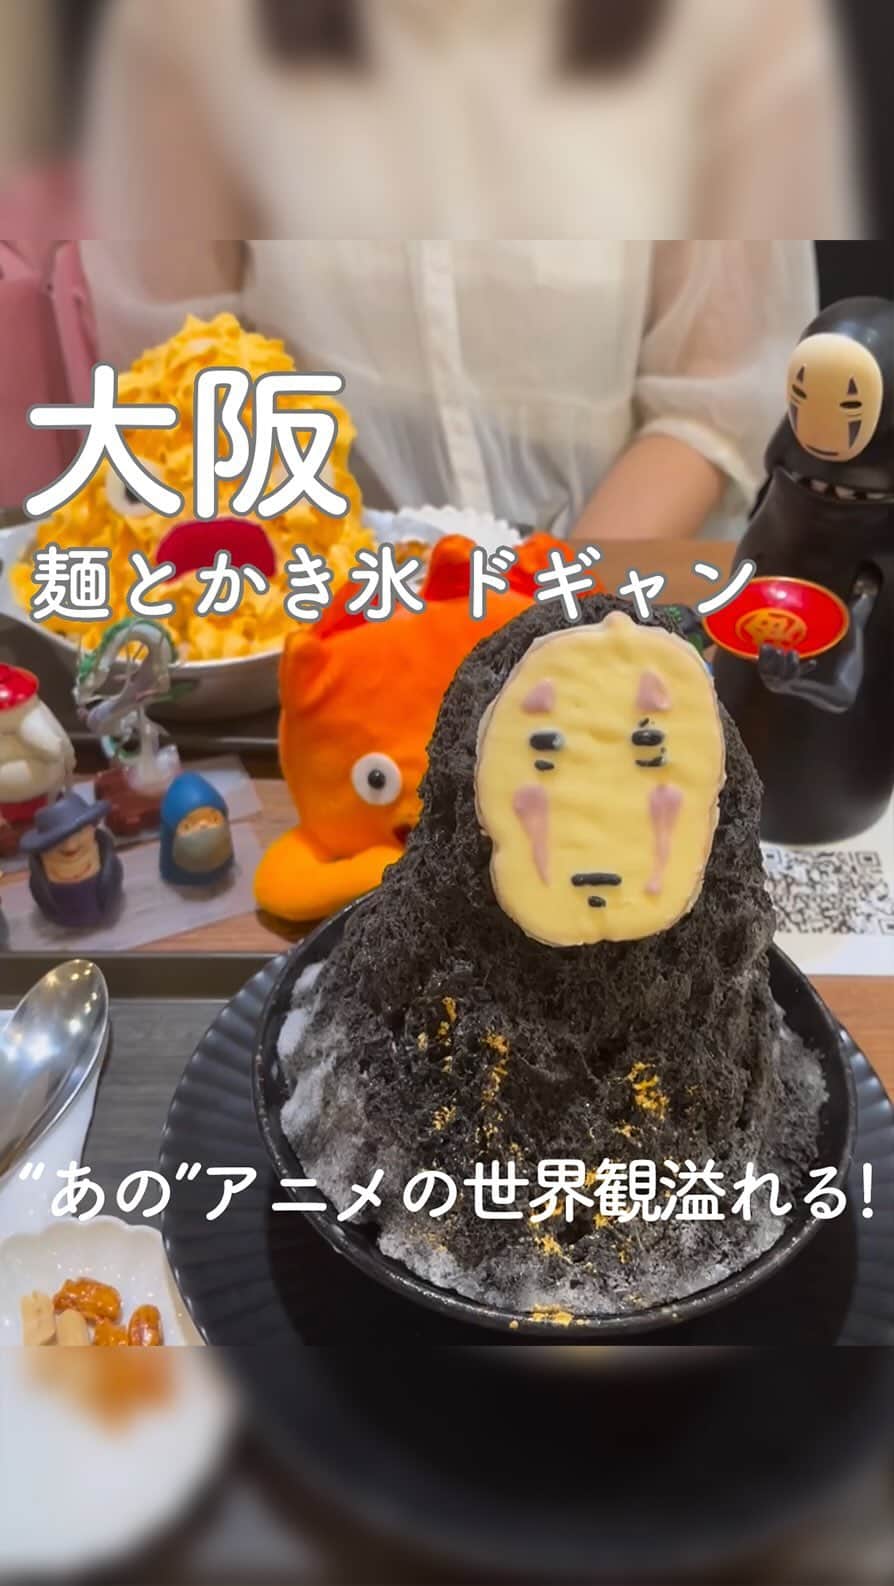 RETRIP<リトリップ>グルメのインスタグラム：「【RETRIP×大阪🍧】 こちらは、大阪・大阪市にある「麺とかき氷 ドギャン」です。あの国民的アニメ「ジブリ」に登場するキャラクターが再現されたかき氷が楽しめる、こちらのお店。ジブリファンにはたまらない、ハイクオリティで可愛らしいキャラクターがお出迎えしてくれますよ✨崩してしまうのが勿体ないくらいのビジュアルに、思わず写真を撮る手が止まりません。SNS撮影用のジブリグッズも盛り沢山ですので、是非足を運んでみてくださいね😌  [スポット情報] 📍住所：大阪府大阪市中央区谷町4-9-11 🚃最寄り駅：谷町四丁目駅から徒歩3分 🕐営業時間：11:30～18:00 🗓定休日：火曜・水曜 📝予約：不可  ※投稿時の情報となります  ・  Photo by @aya.__.gourmet  ______________________________  全国で話題のスイーツを紹介しているアカウントです！ 他の投稿はこちらから！ >> @retrip_gourmet  ______________________________  RETRIPでは「おでかけ」に関する様々な情報を発信しています。ぜひ他のアカウントもチェックしてくださいね！ . @retrip_news 最新のおでかけ情報を紹介 @retrip_nippon 日本の絶景を紹介 @retrip_global 海外の絶景を紹介 @retrip_gourmet 全国の話題のスイーツを紹介 @retrip_cafe 全国のおしゃれなカフェを紹介 . ▼RETRIP[リトリップ]のアプリ 最新情報をまとめてご覧になりたい方には『RETRIPアプリ』がおすすめ！明日のお出かけにすぐ活かせるアイディアが盛りだくさんです✨プロフィールのURLからダウンロードできますので、ぜひご利用ください。 .  ______________________________  #retrip #リトリップ #retrip_groumet #retrip_cafe #国内グルメ #東京グルメ #国内カフェ #東京カフェ #グルメ日記 #飯テロ #食べ歩き #groumetstagram #japanesefood #カフェ #スイーツ #カフェ巡り #かふぇすたぐらむ #スイーツ好きと繋がりたい #instafood #かき氷 #ジブリ #ジブリ飯 #キャラクター飯 #ドギャン #麺とかき氷ドギャン #大阪 #大阪グルメ #大阪スイーツ」